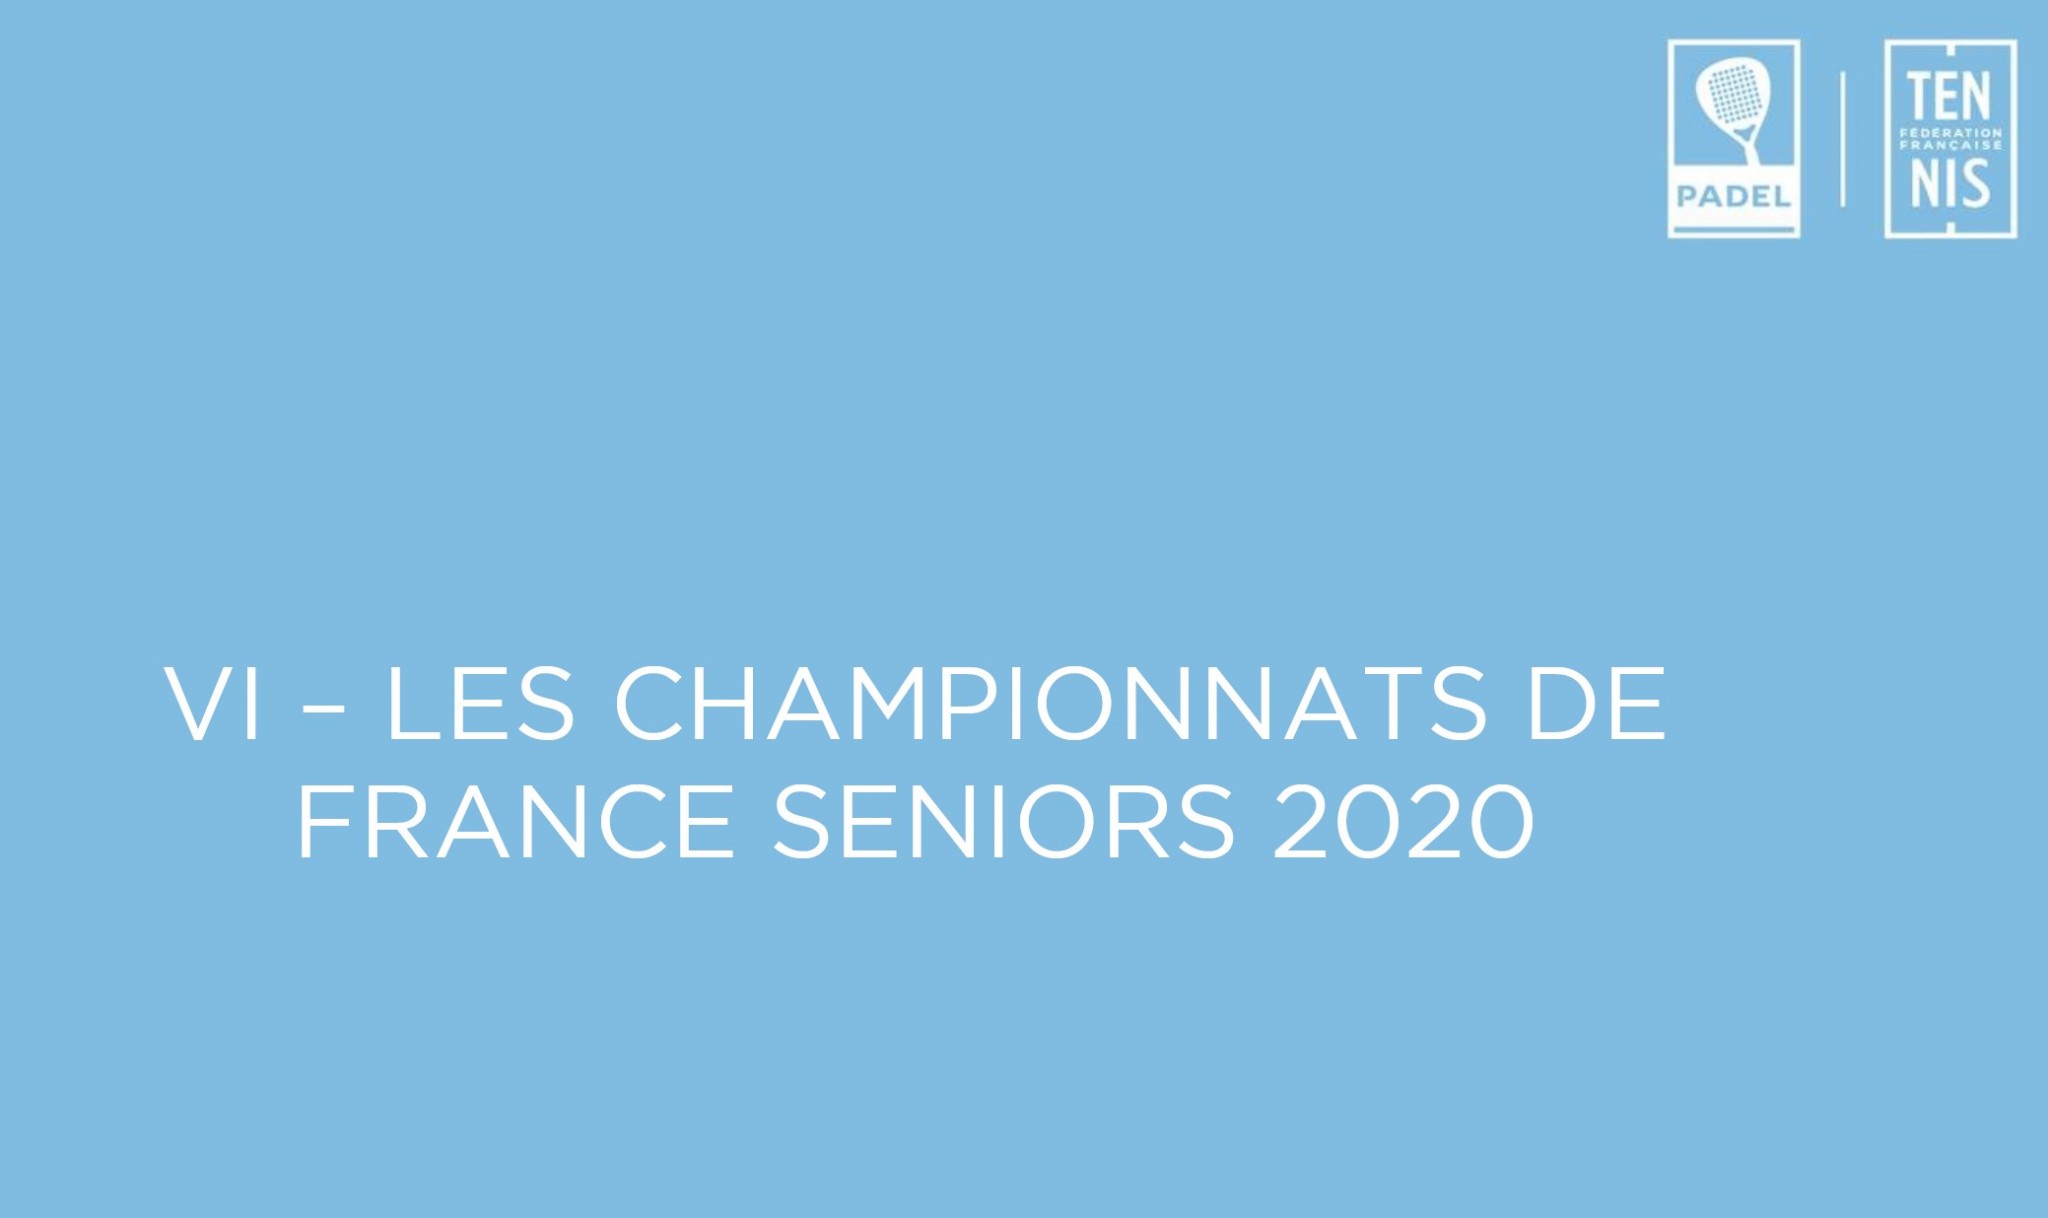 championnats France séniors padel 2020|championnats France séniors padel 2020|tableaux championnats france padel 2020